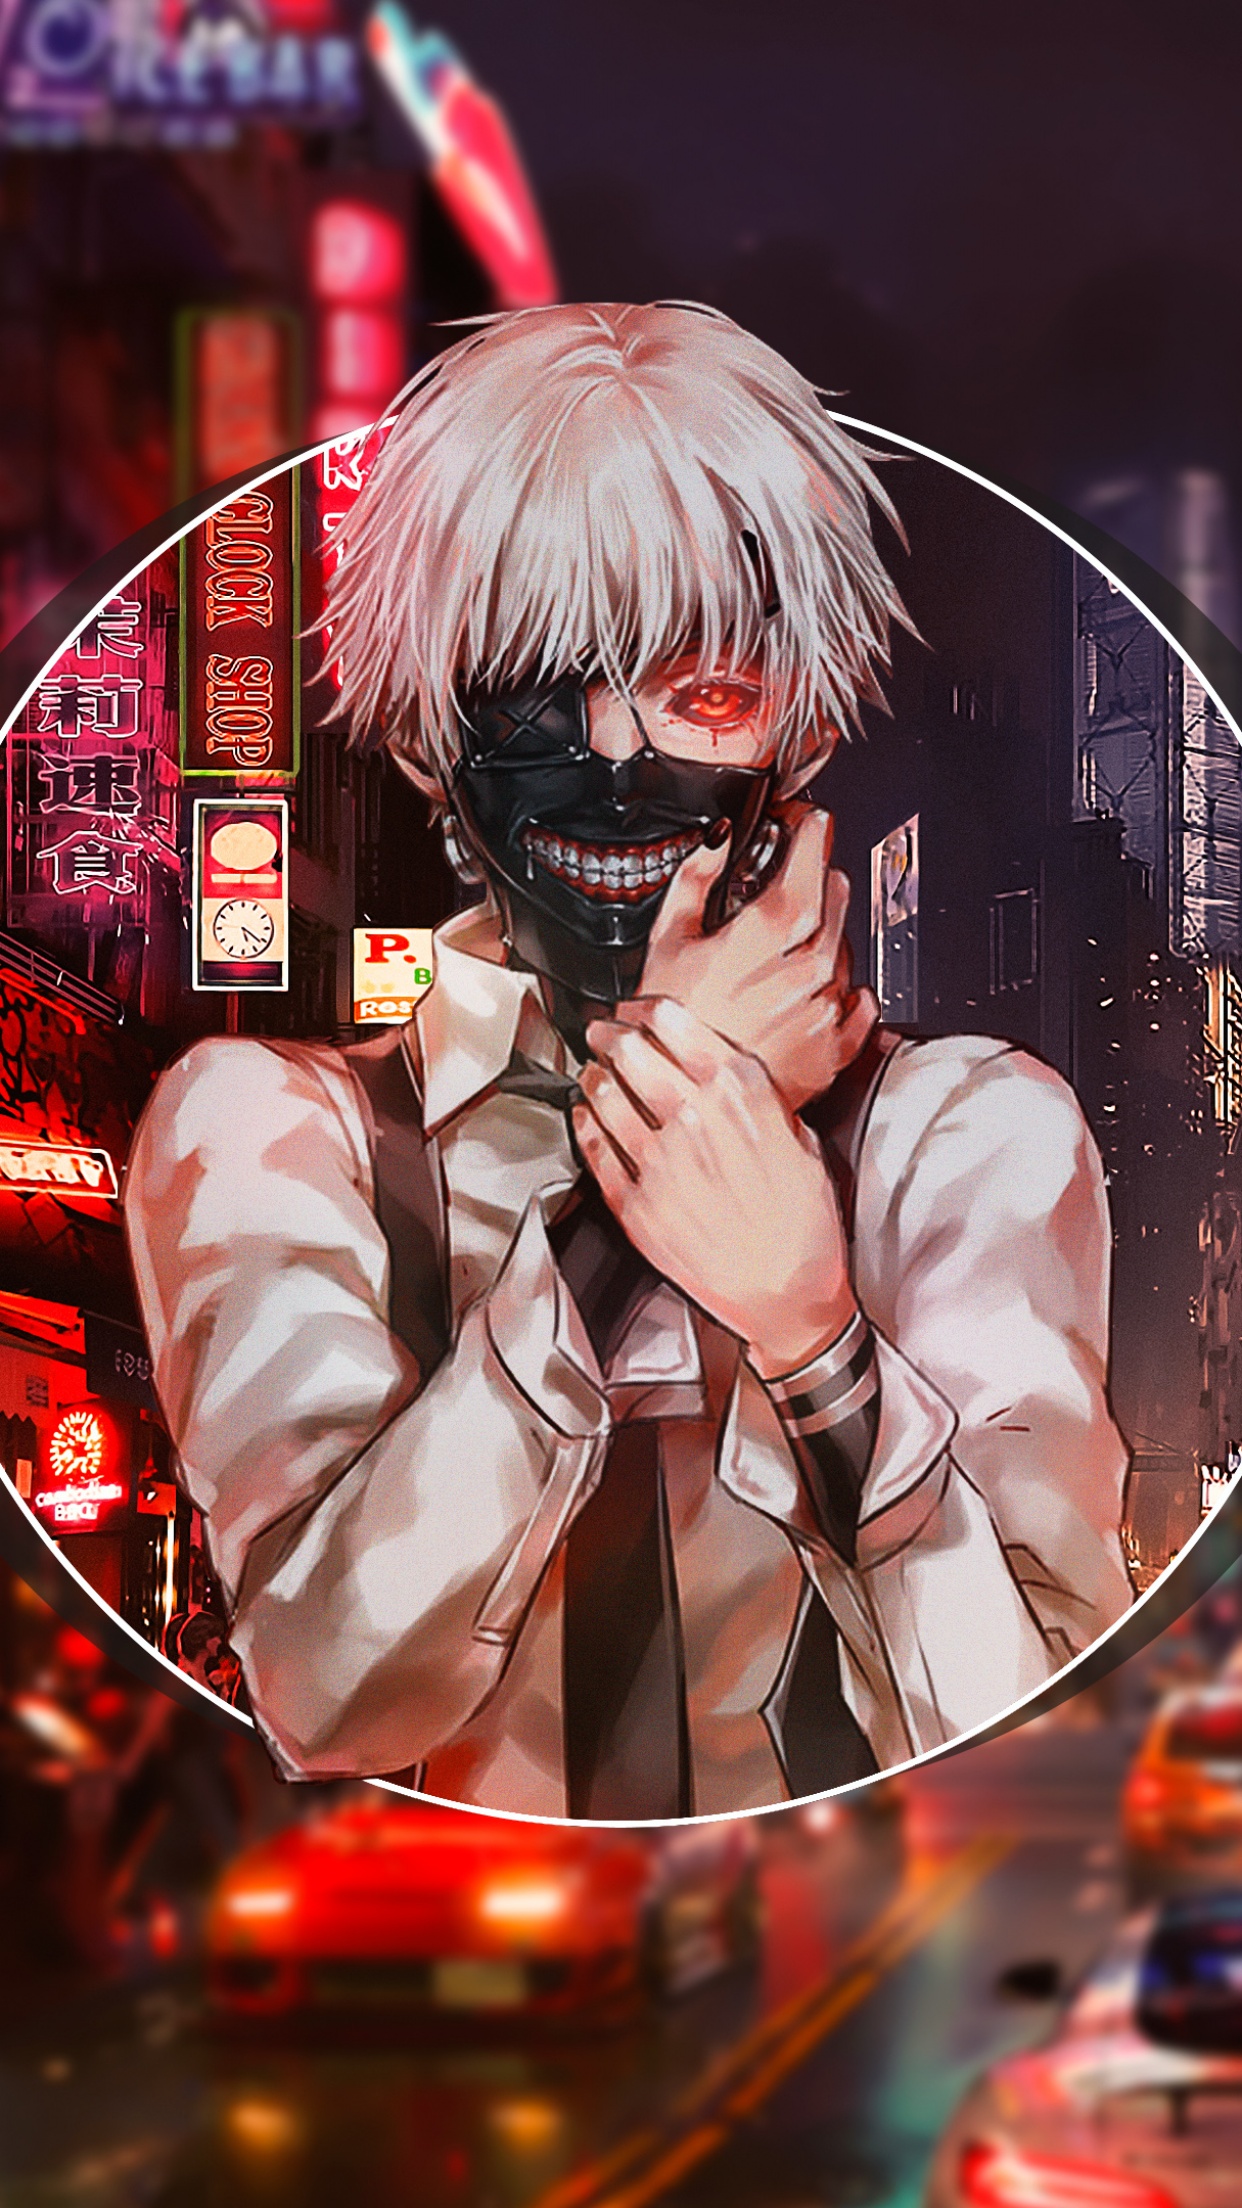 Ken Kaneki Red Eye Eyepatch Tokyo Ghoul 4K Phone iPhone Wallpaper #5680b